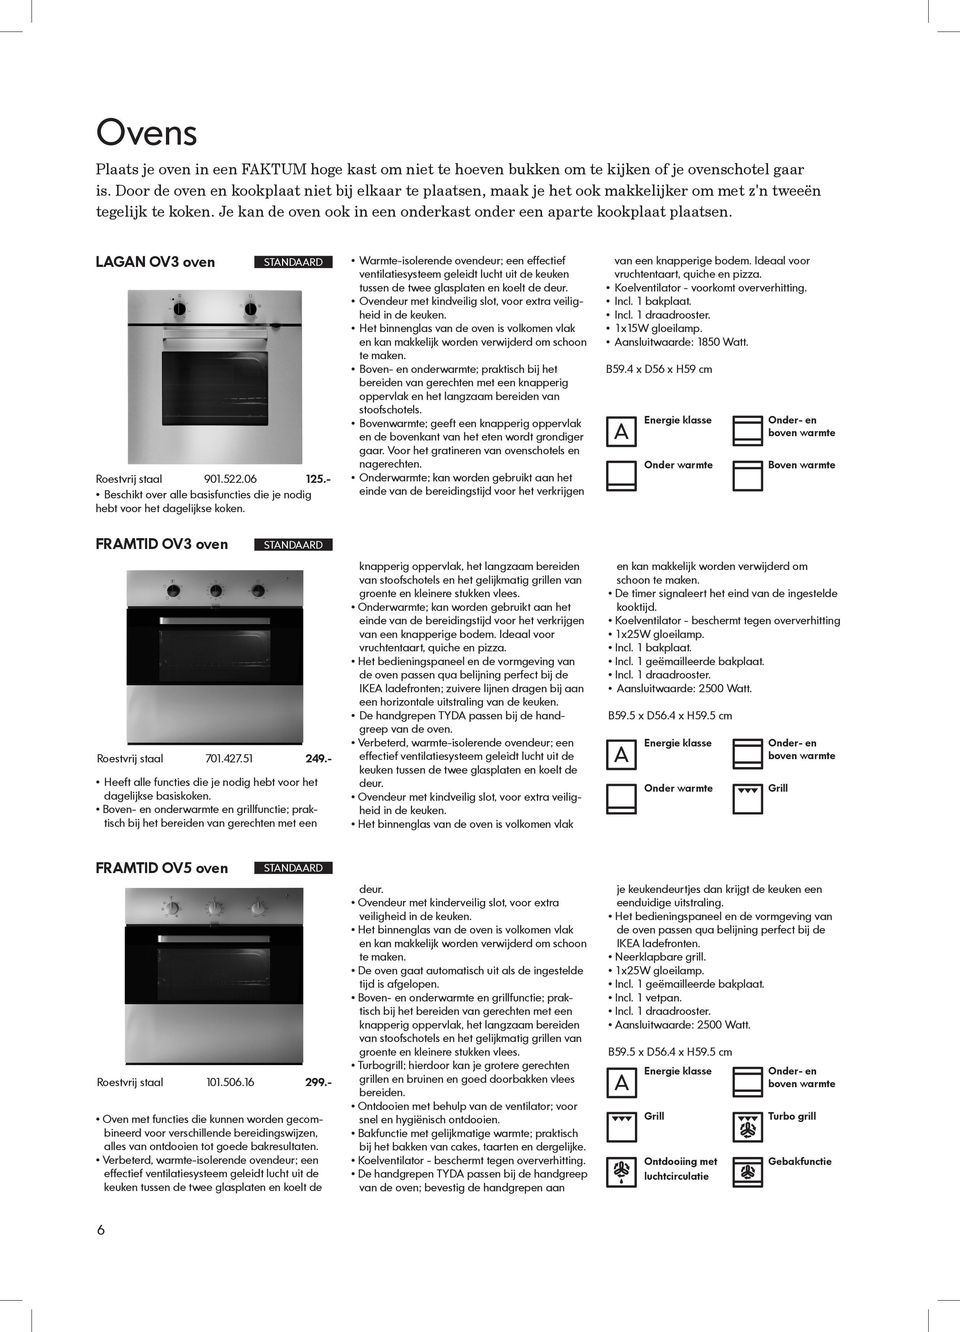 LAGAN OV3 oven STANDAARD Roestvrij staal 901.522.06 125.- Beschikt over alle basisfuncties die je nodig hebt voor het dagelijkse koken.